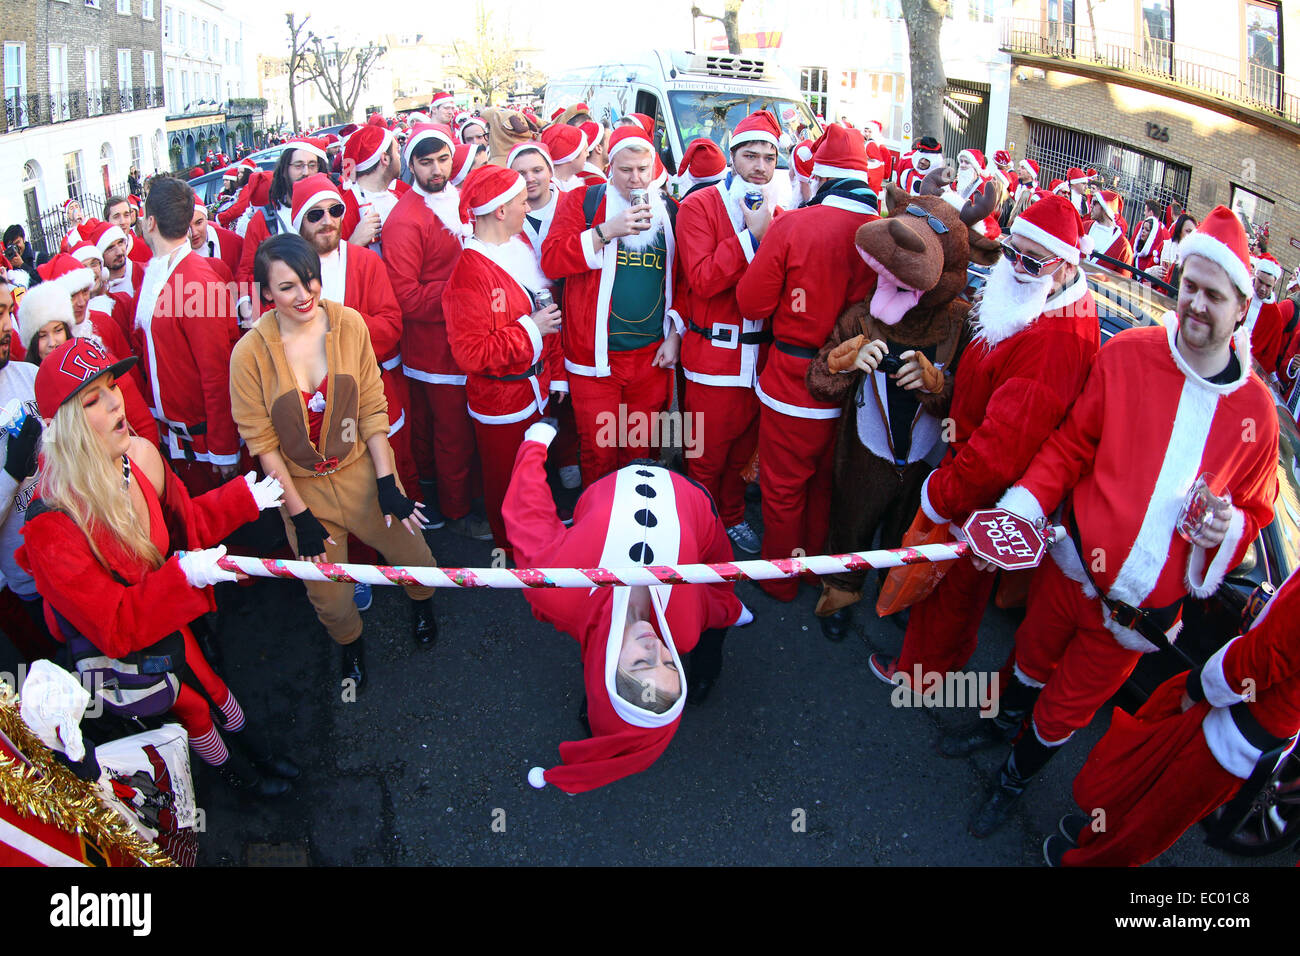 Londres, Royaume-Uni. 6 décembre 2014. Les participants habillés en Père Noël dans le Londres 2014 Santacon dans les rues de Londres qui célèbre sa 20e année anniversdary ce crédit : Paul Brown/Alamy Live News Banque D'Images